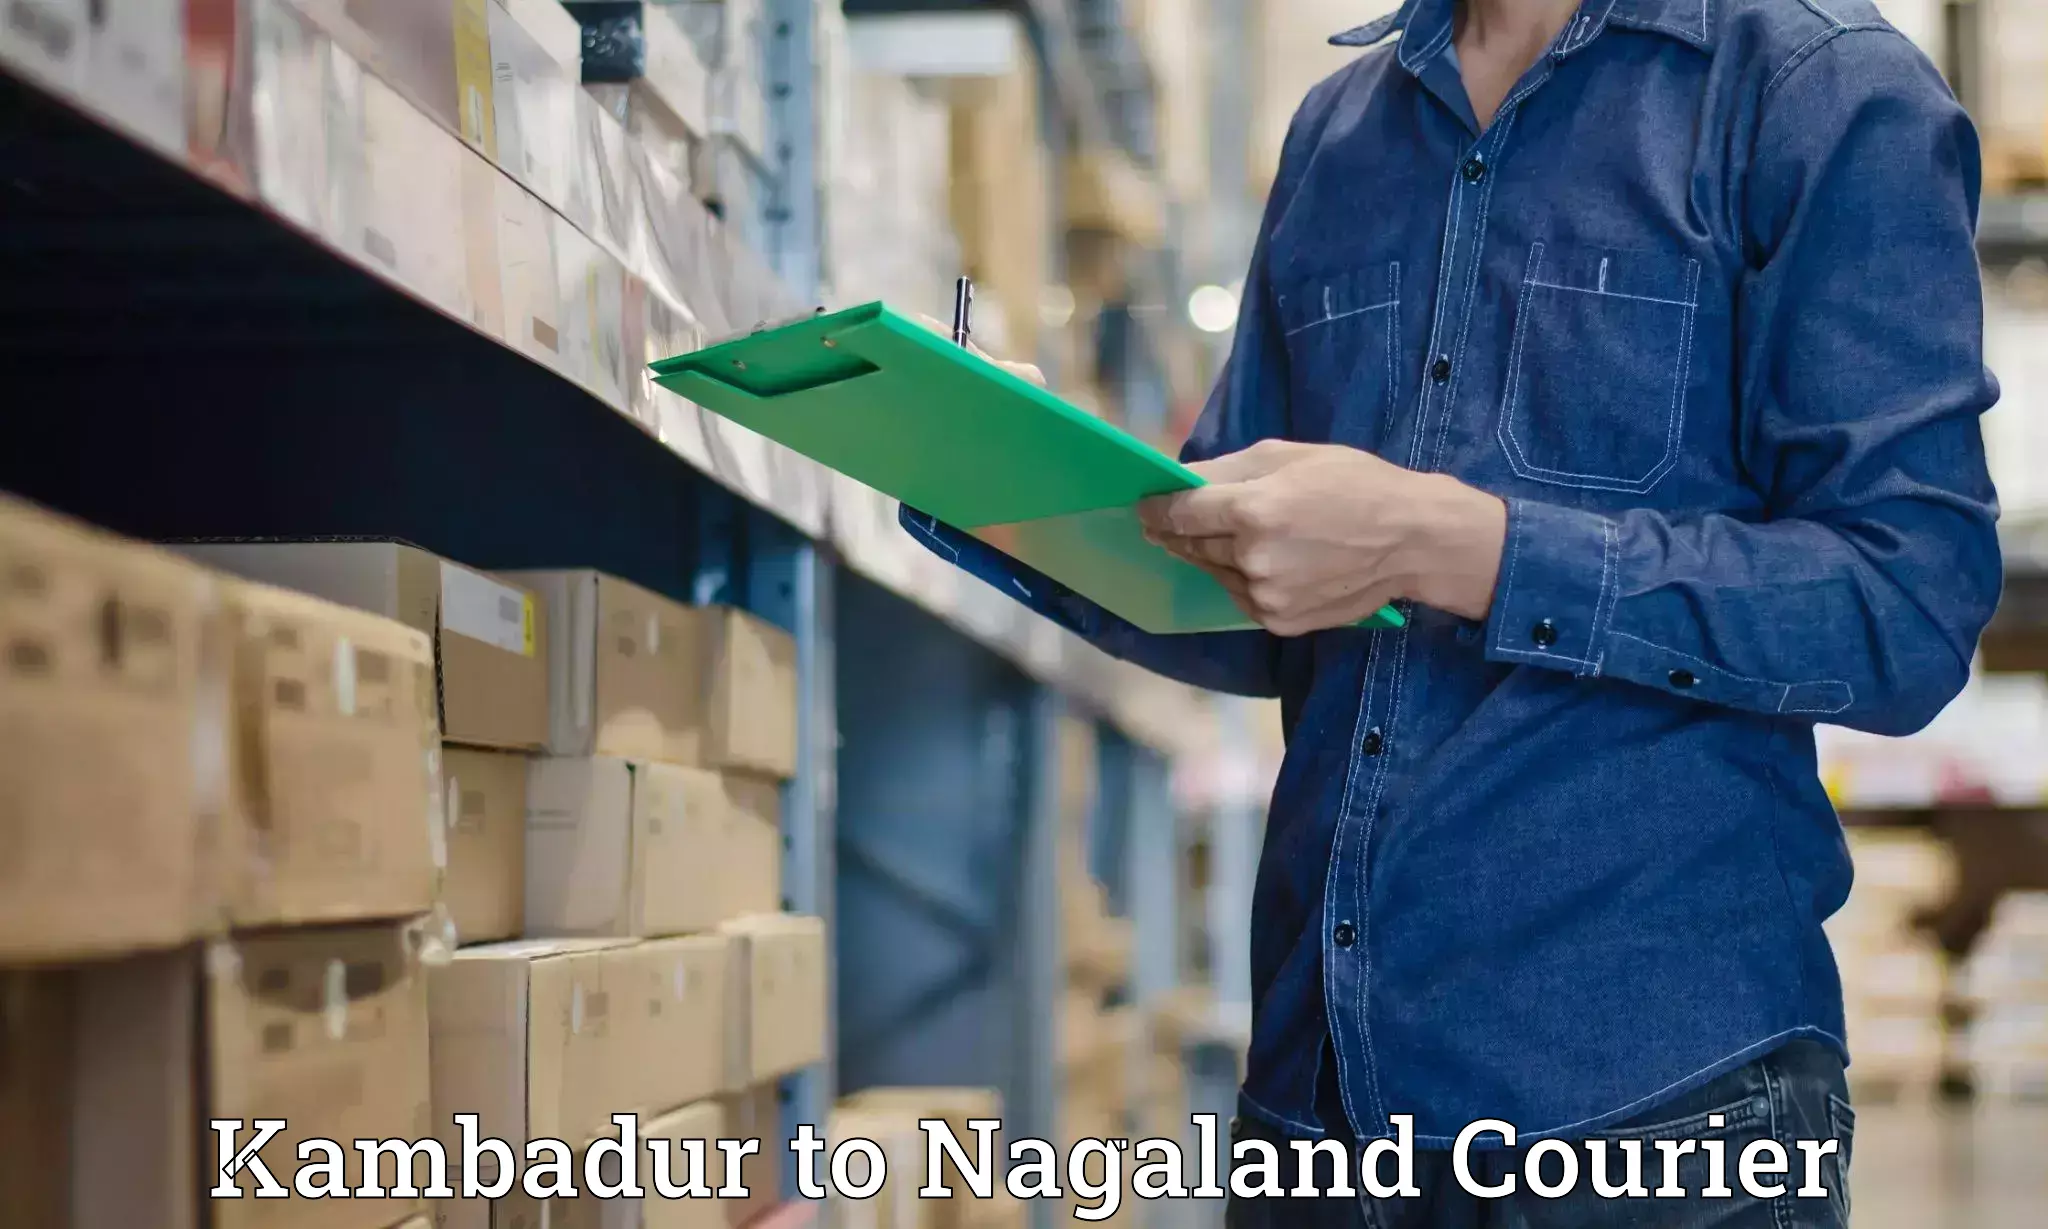 Tailored shipping services Kambadur to Nagaland